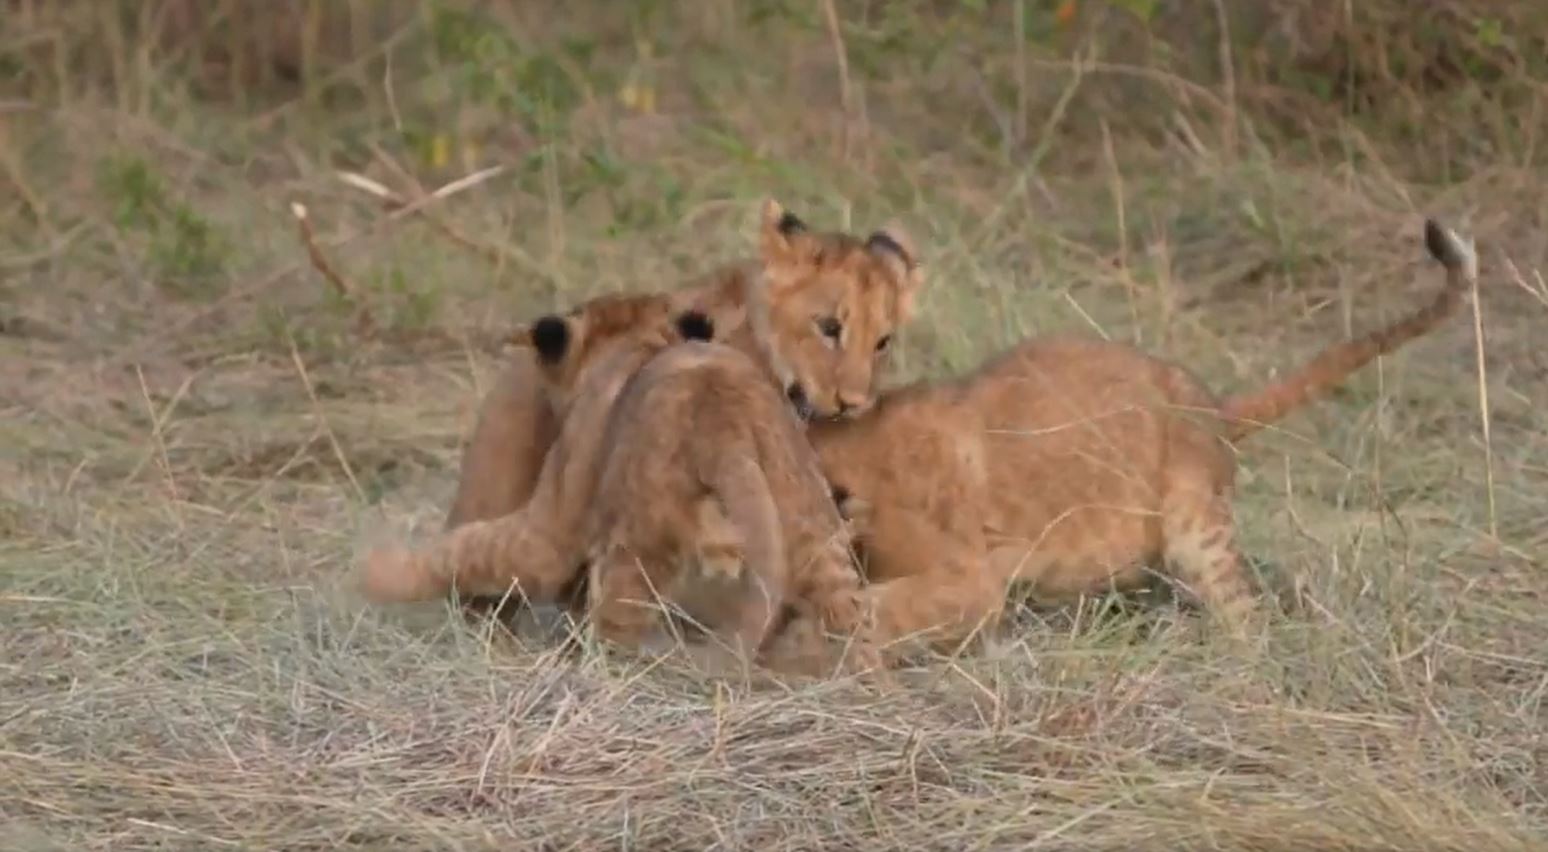  Ich beobachte gerade eine Löwenfamilie mit drei Babys, die gerne spielen. Es ist herrlich diese wunderbaren Geschöpfe zu fotografieren.